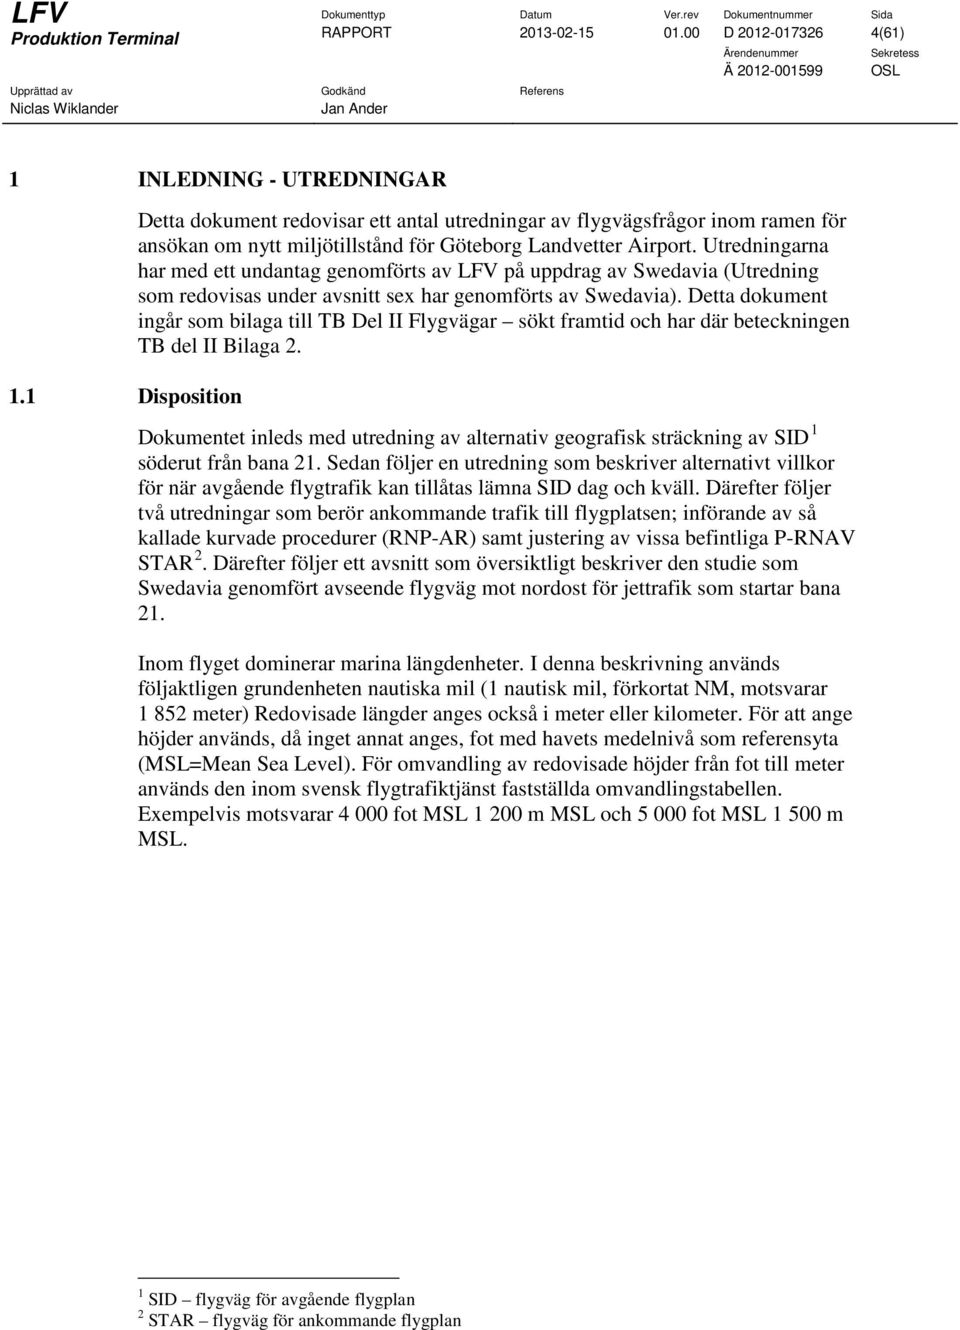 Utredningarna har med ett undantag genomförts av LFV på uppdrag av Swedavia (Utredning som redovisas under avsnitt sex har genomförts av Swedavia).